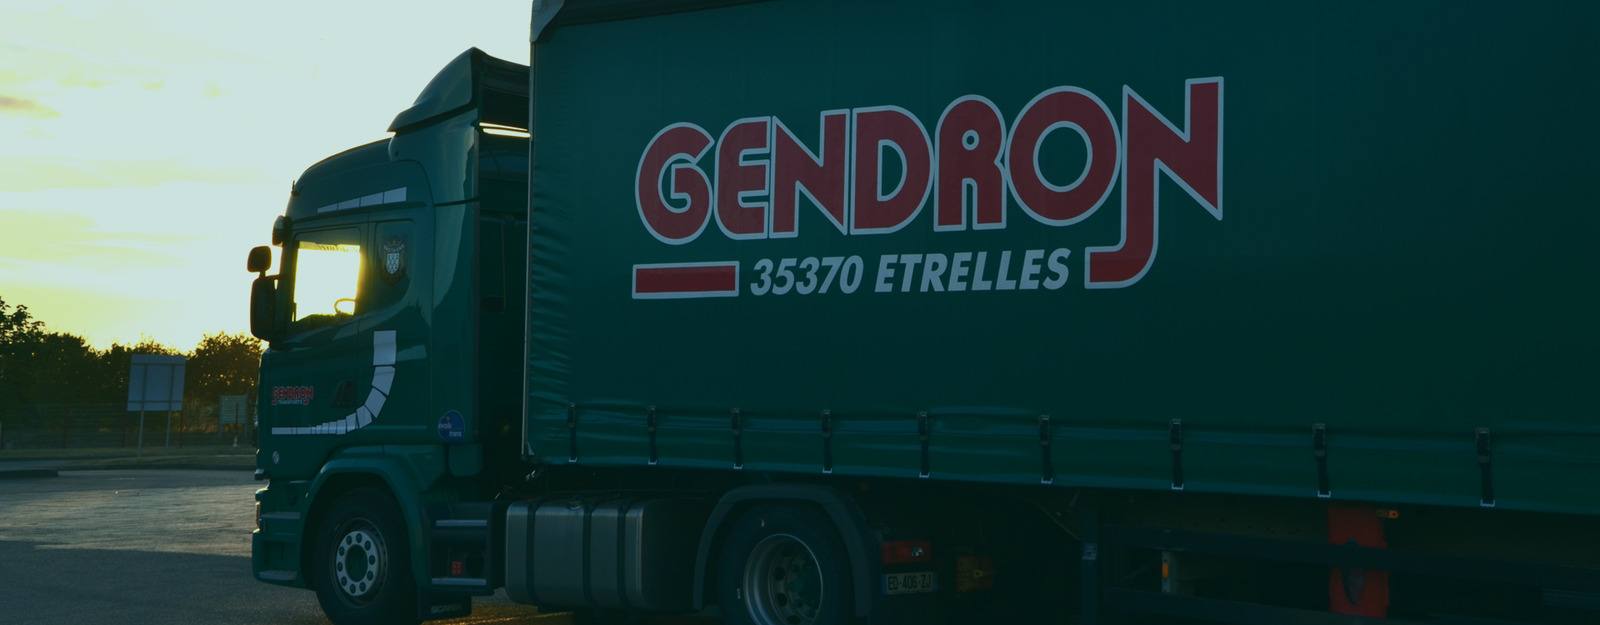 Devis Transport Bretagne - Transports Gendron